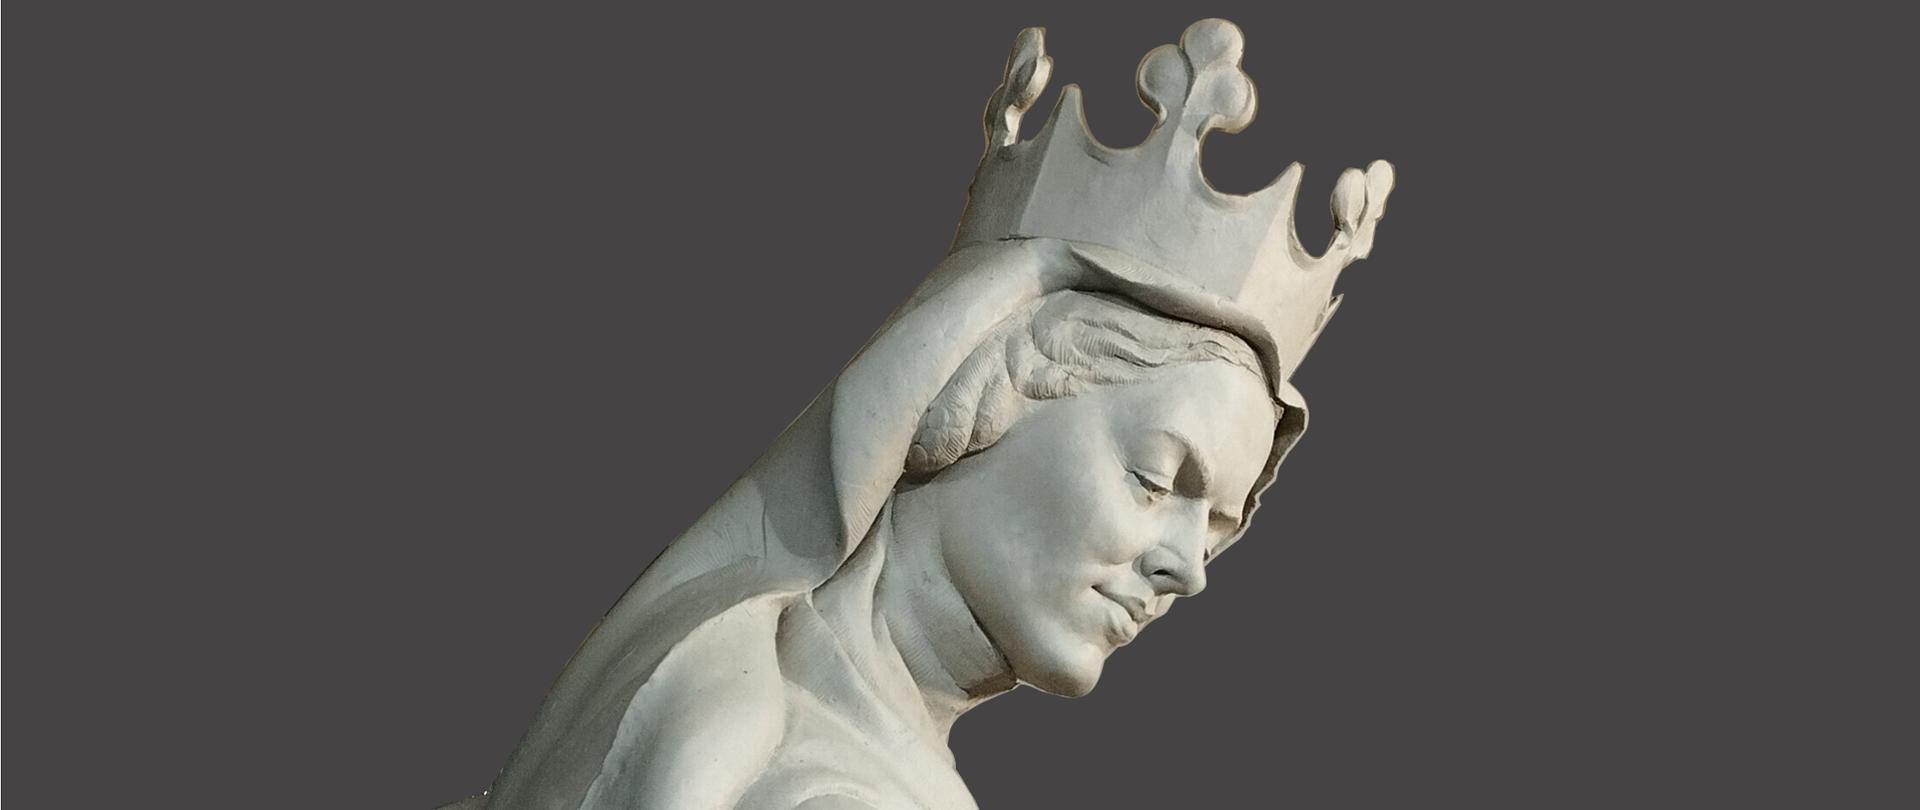 Na zdjęciu w centralnej części przedstawiona jest rzeźba - postać Królowej Ryksy Elżbiety. Rzeźba wykonany jest z szarej gliny. Postać królowej pokazana jest z boku. Królowa ma na głowie koronę, ma długie rozpuszczone włosy. Postać ma na głowie welon, ubrana jest w długą suknię. 